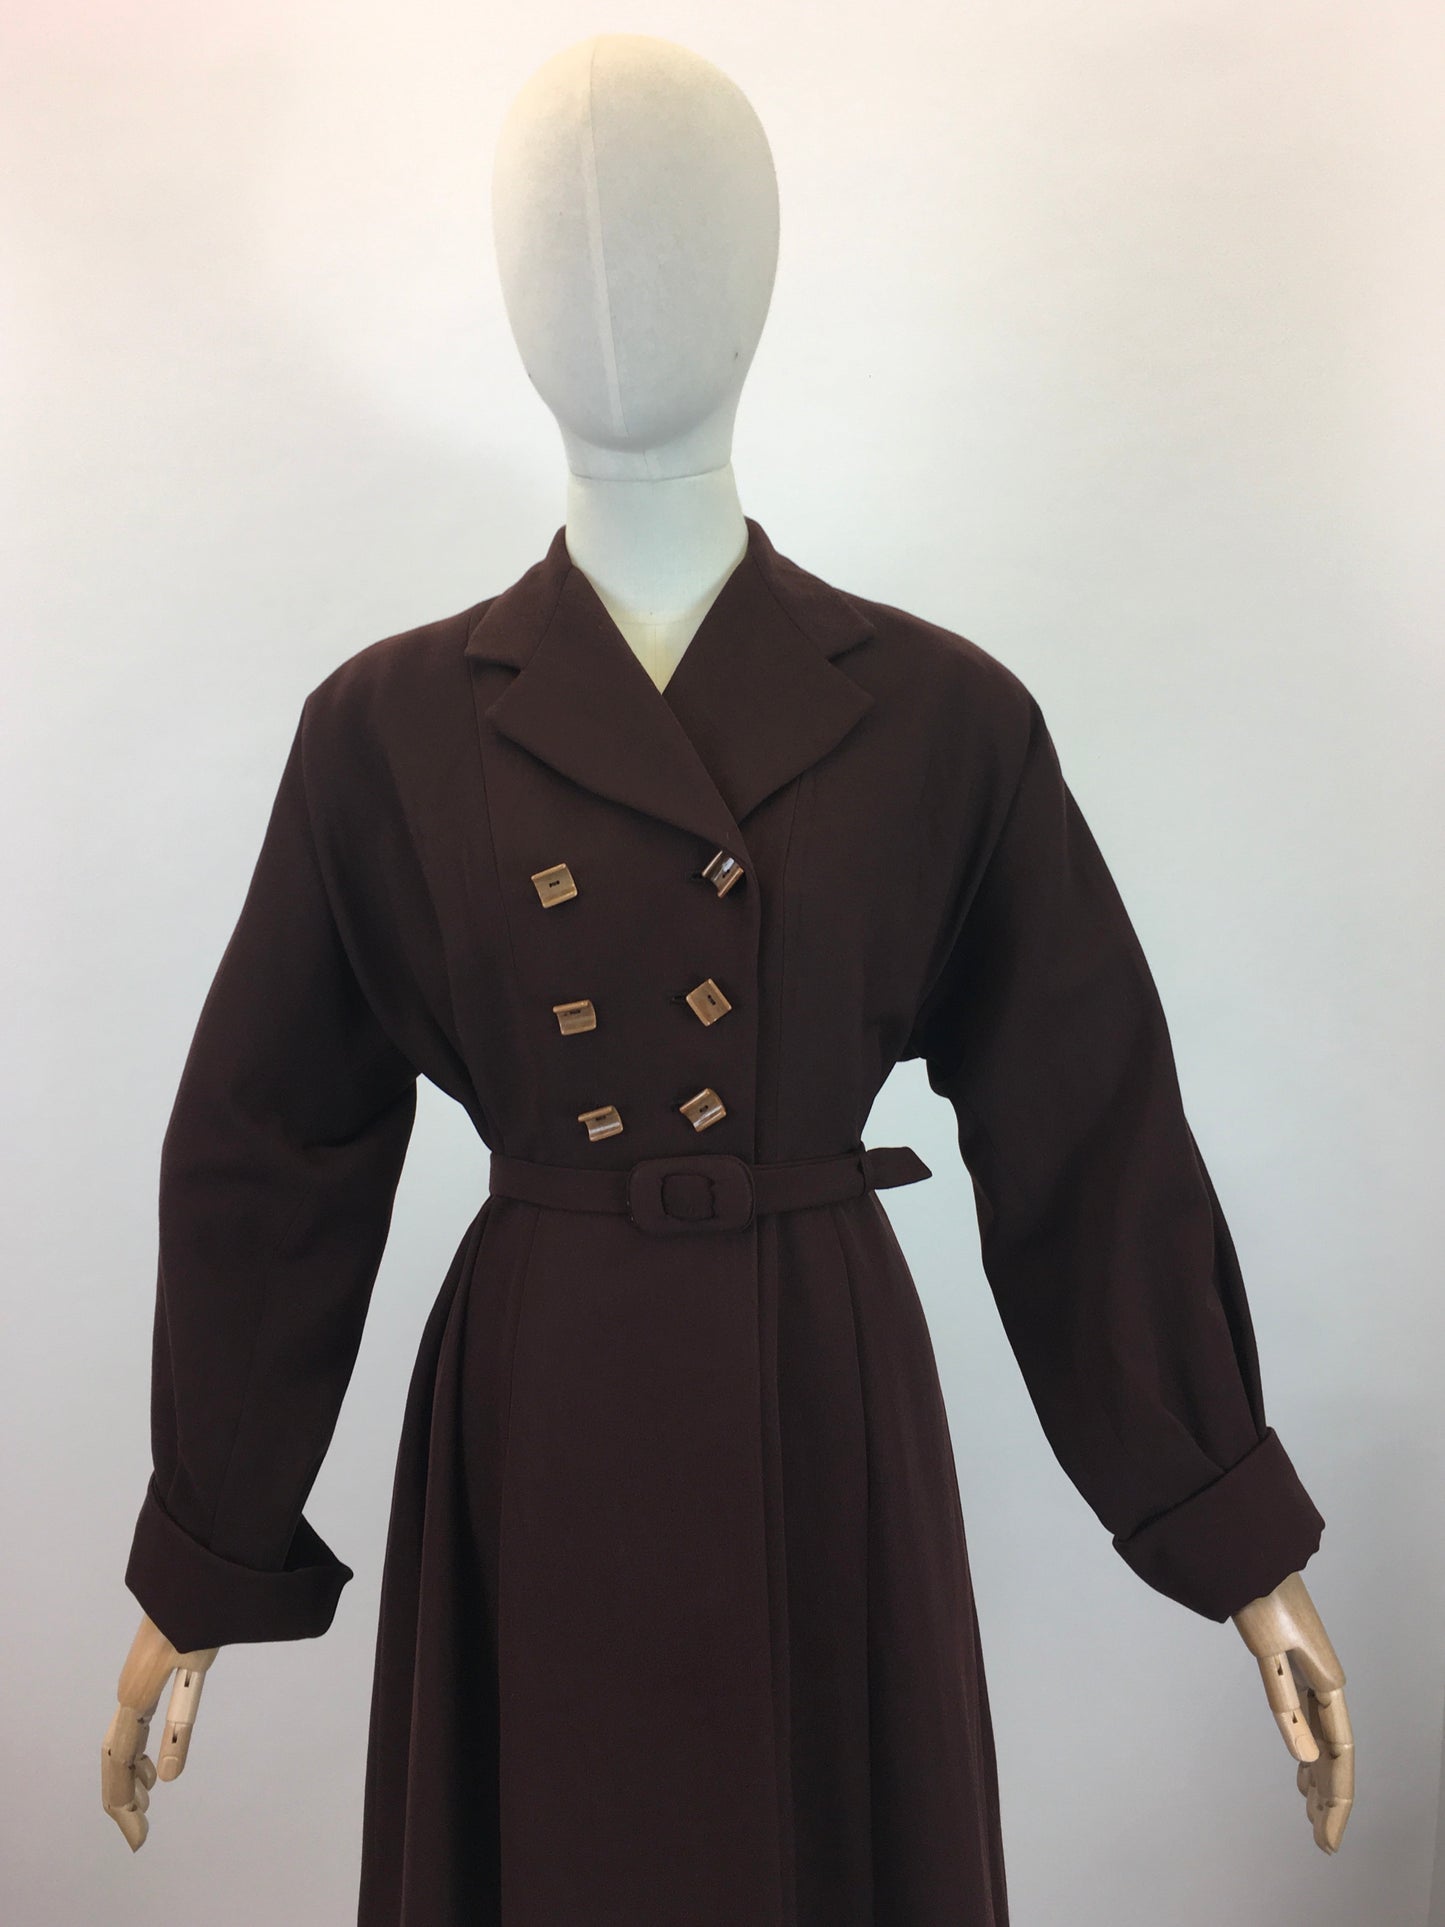 Original 1940's Stunning Gaberdine Coat - In A Warm Chocolate Brown